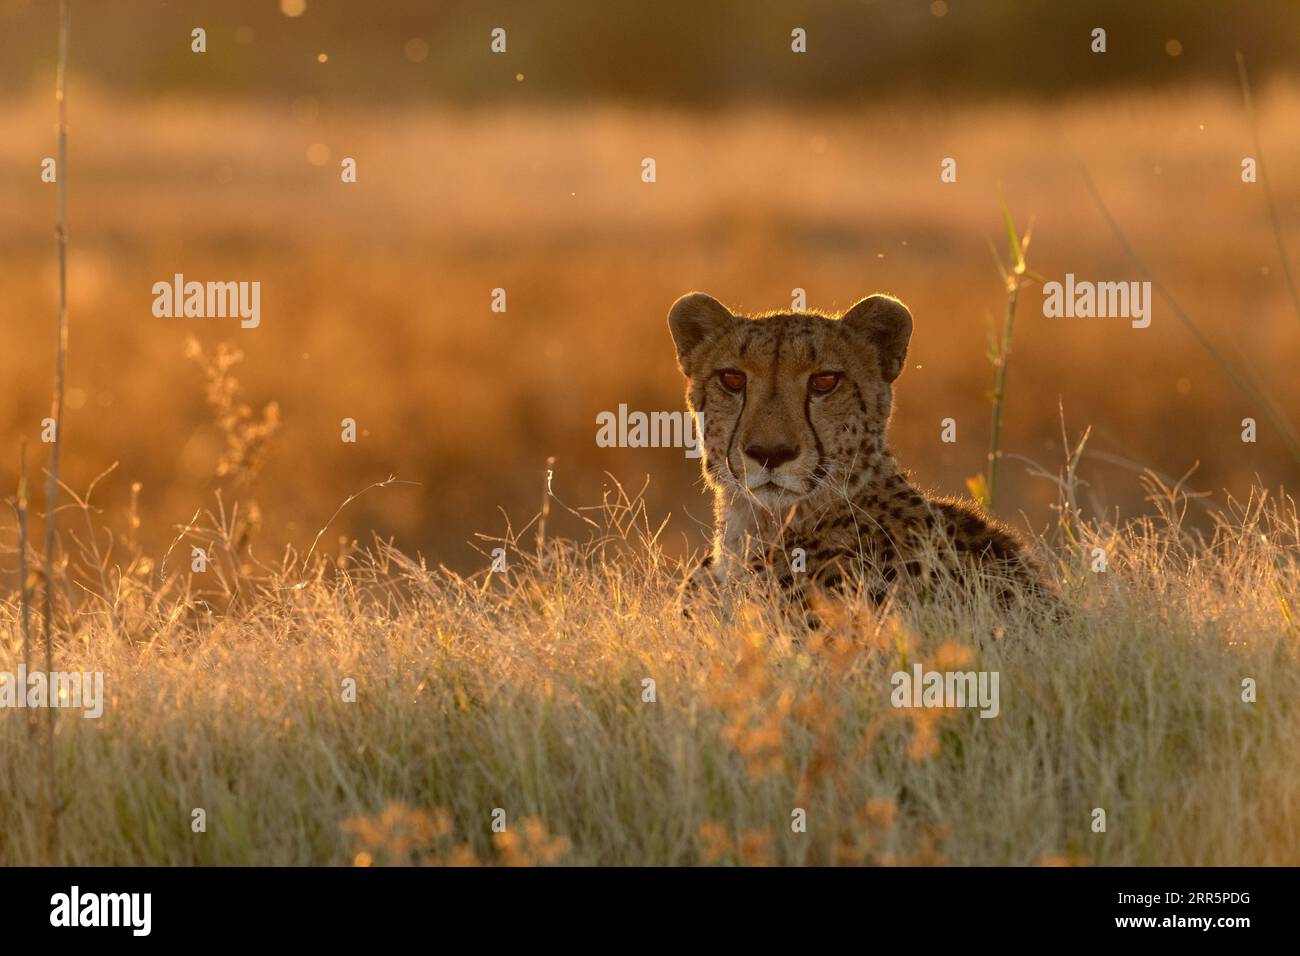 Ein Gepard ruht im goldenen Nachmittagslicht, das sein Gesicht hinterleuchtet. Okavango Delta, Botsuana. Stockfoto